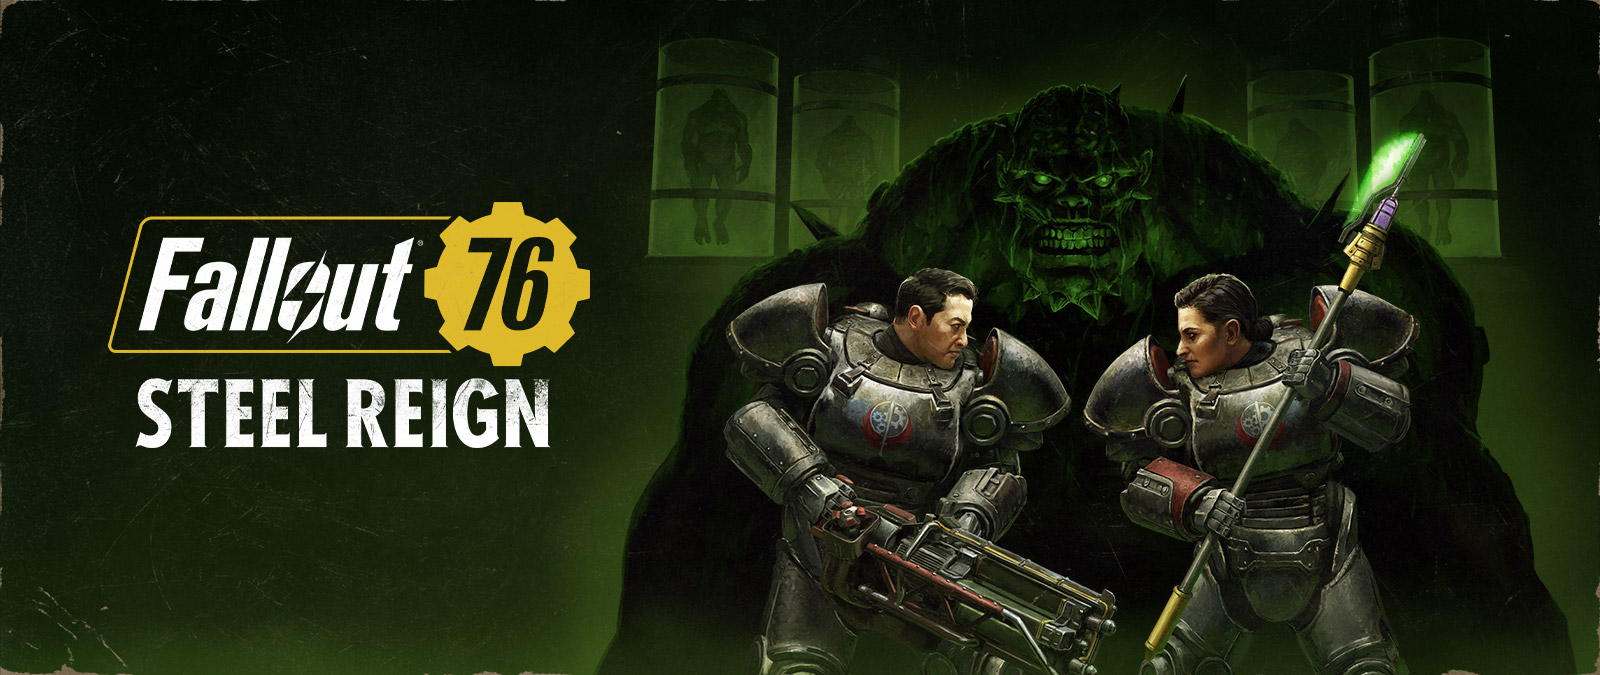 Fallout 76 Steel Reign, dve postavy v mechanických oblekoch oproti sebe a v pozadí je veľká príšera.